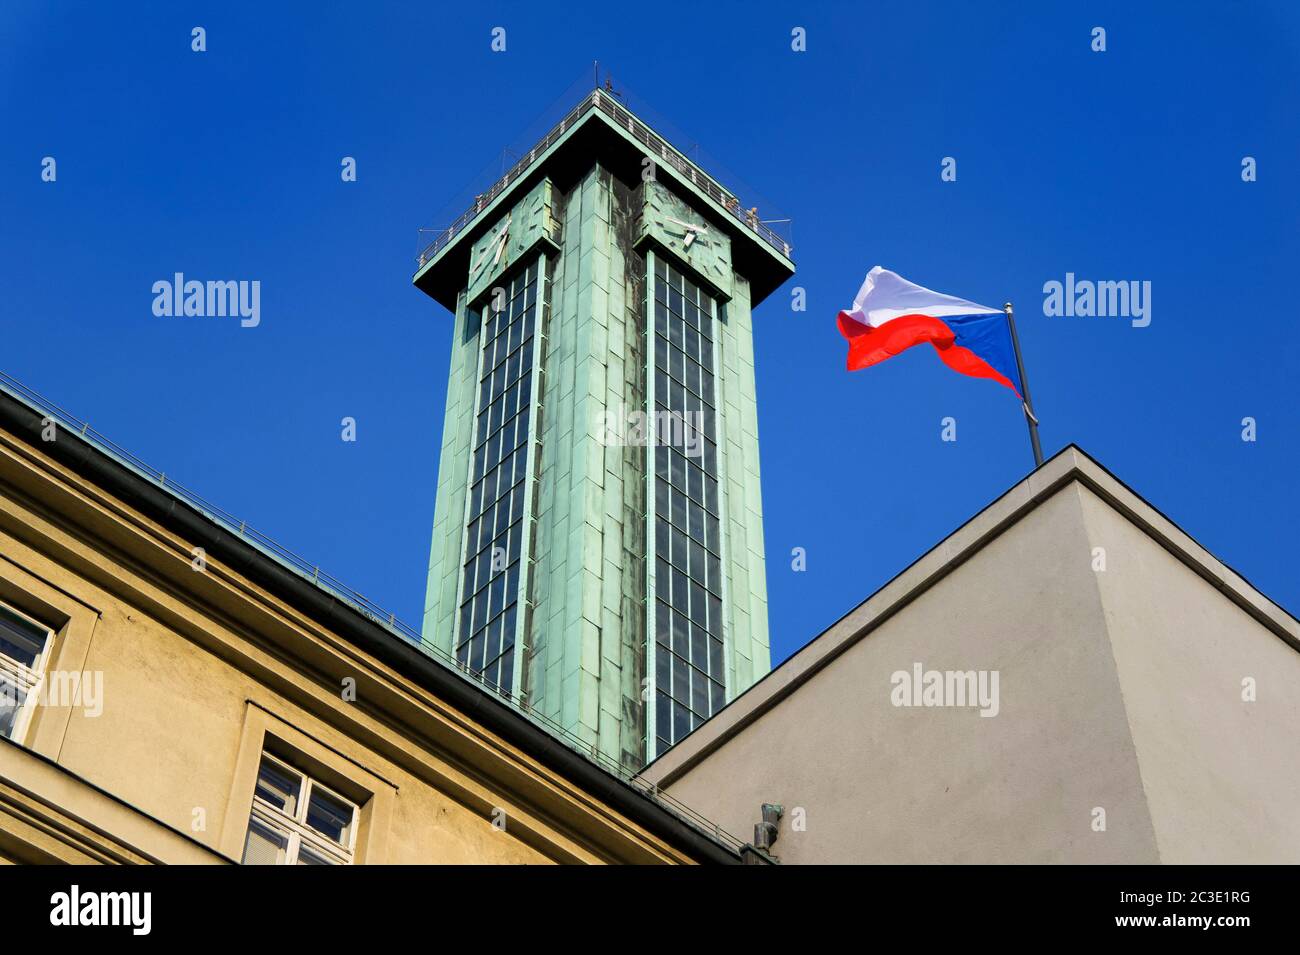 Drapeau national tchèque et tour de visualisation et de surveillance de la mairie de la Nouvelle ville (Nova radnice), Ostrava, République tchèque / Tchéquie Banque D'Images